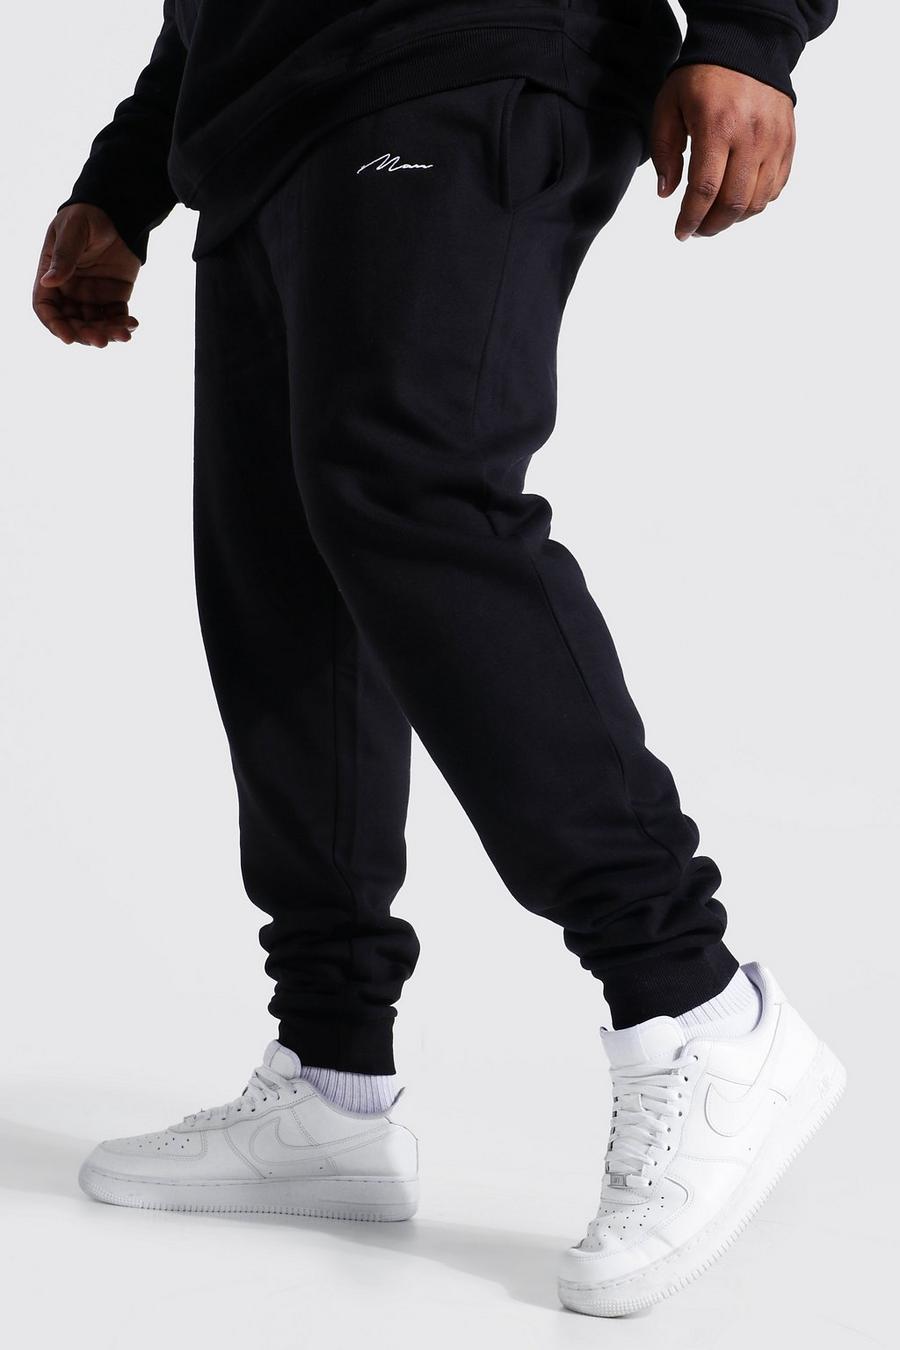 שחור negro מכנסי ריצה סקיני מבד ממוחזר עם כיתוב MAN למידות גדולות